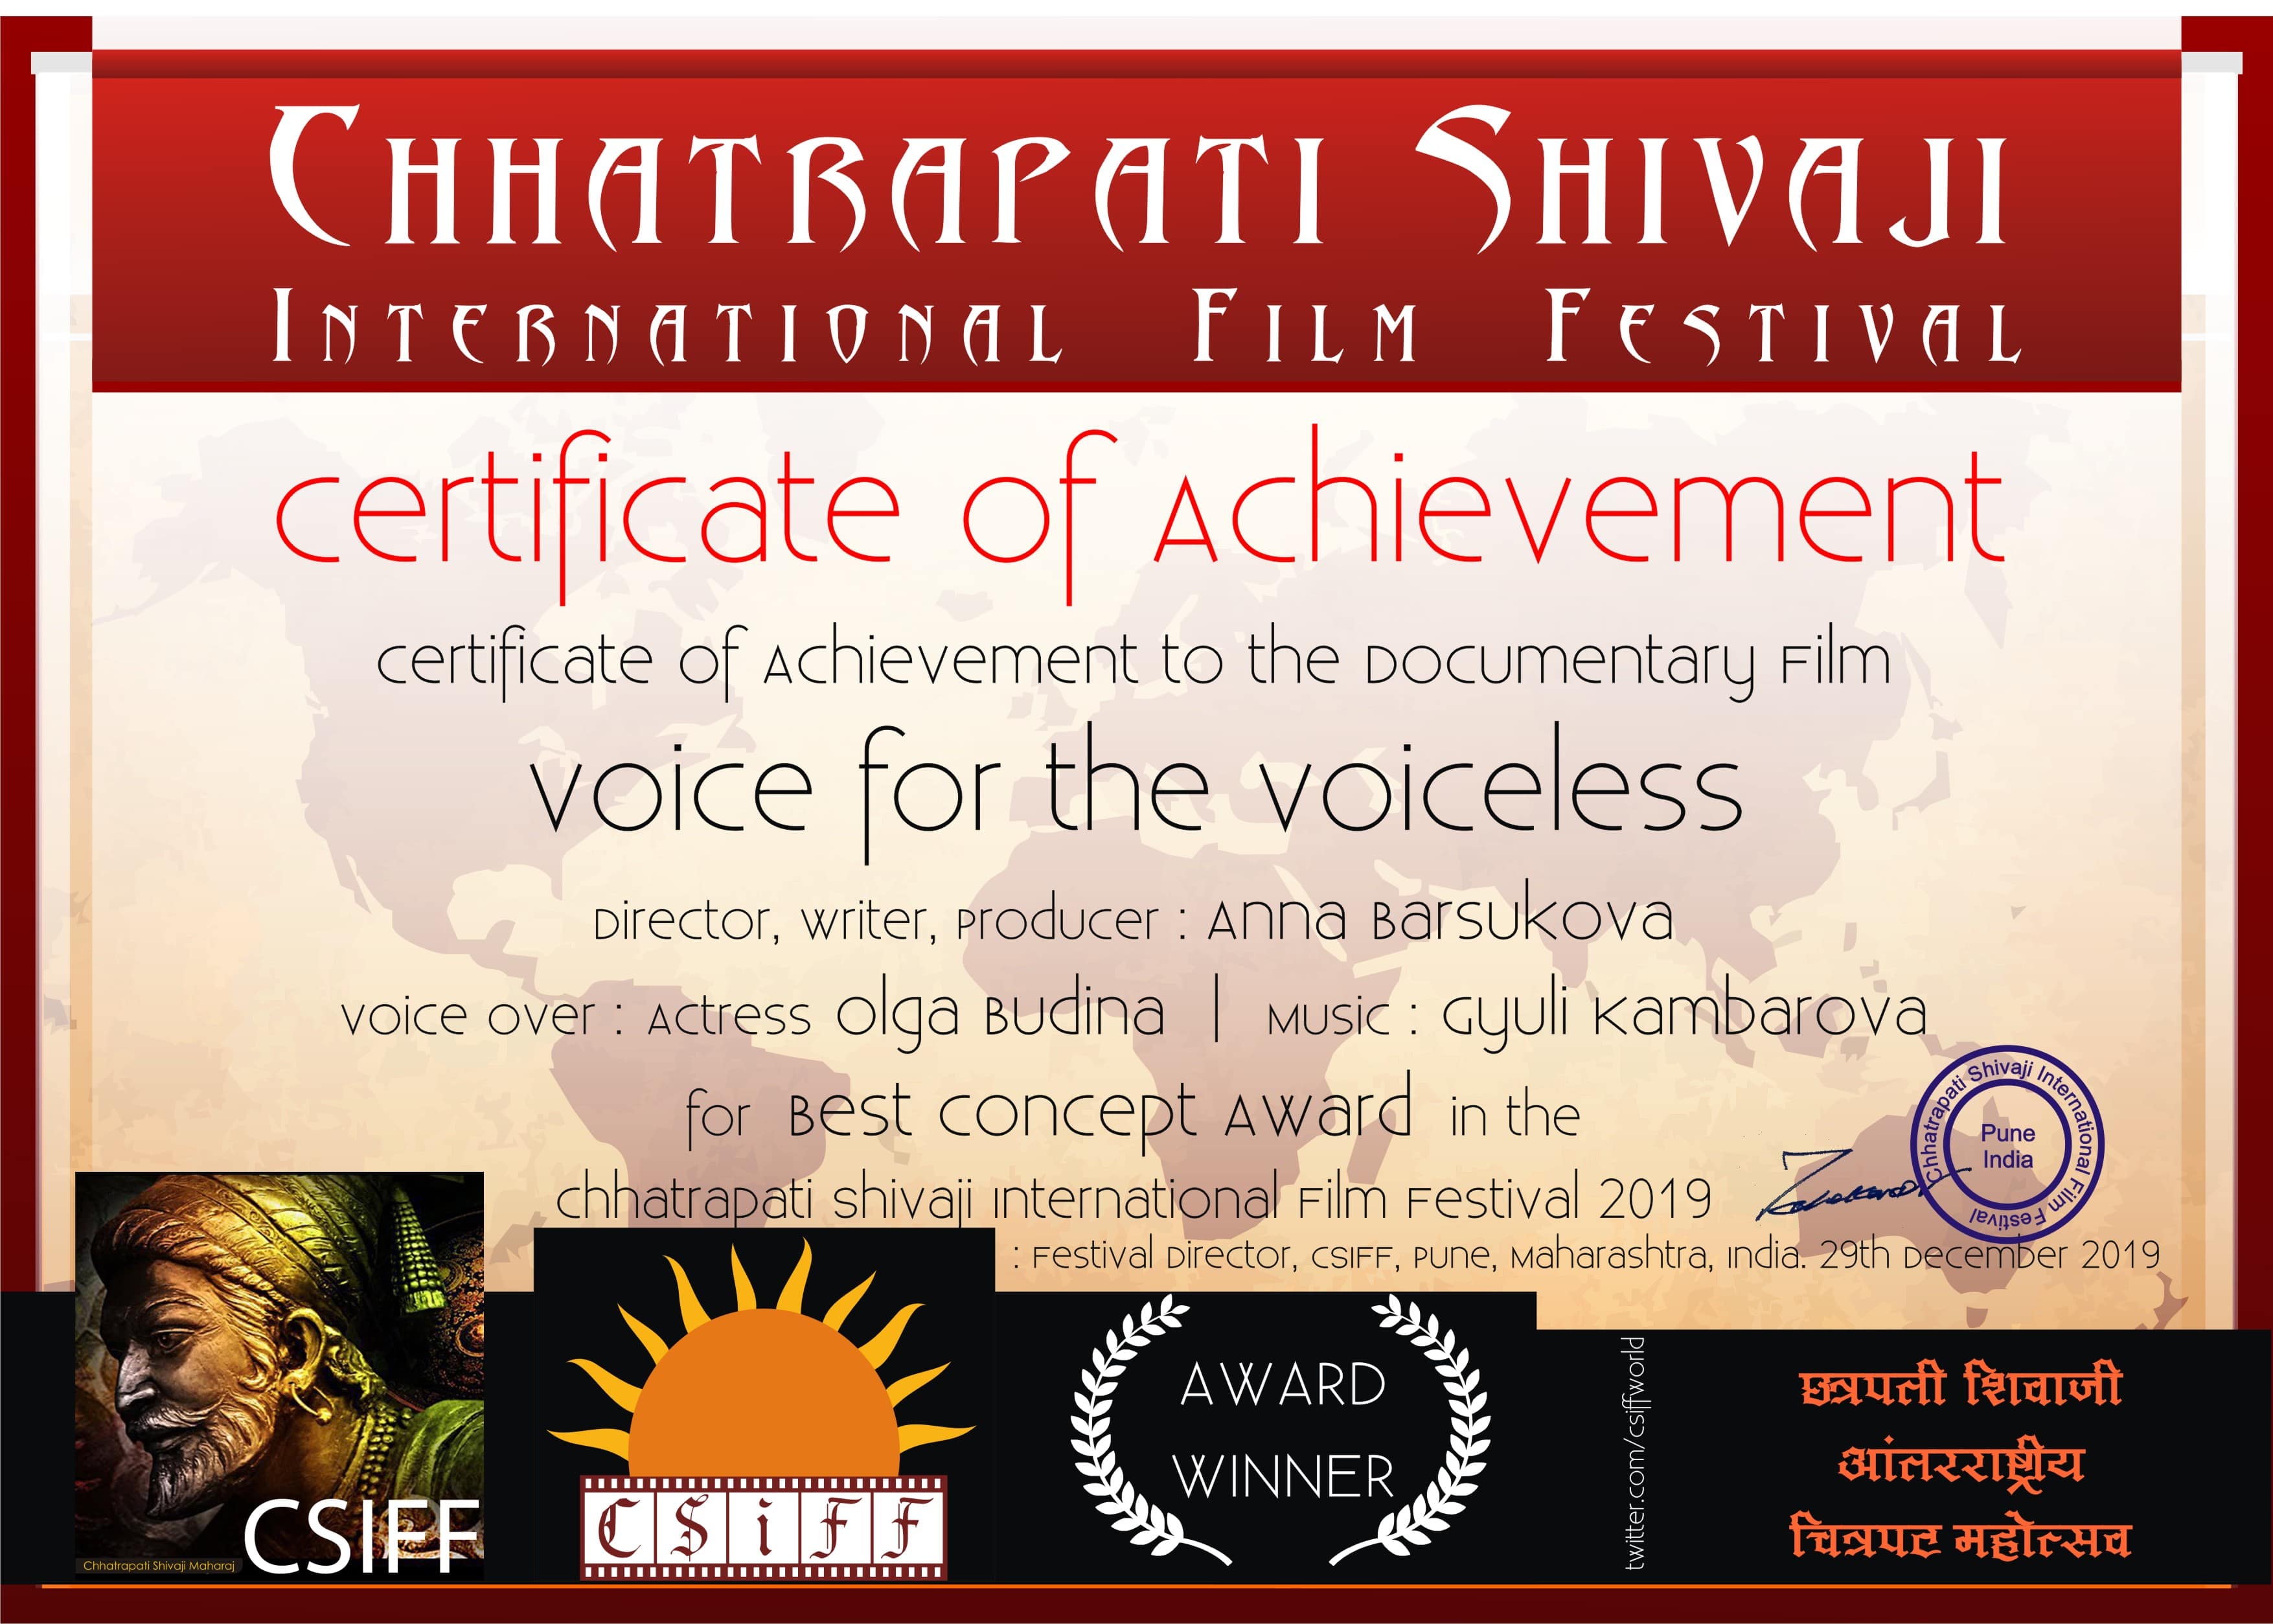 Best Concept Winner – Chhatrapati Shivaji Film Festival (Pune, India)